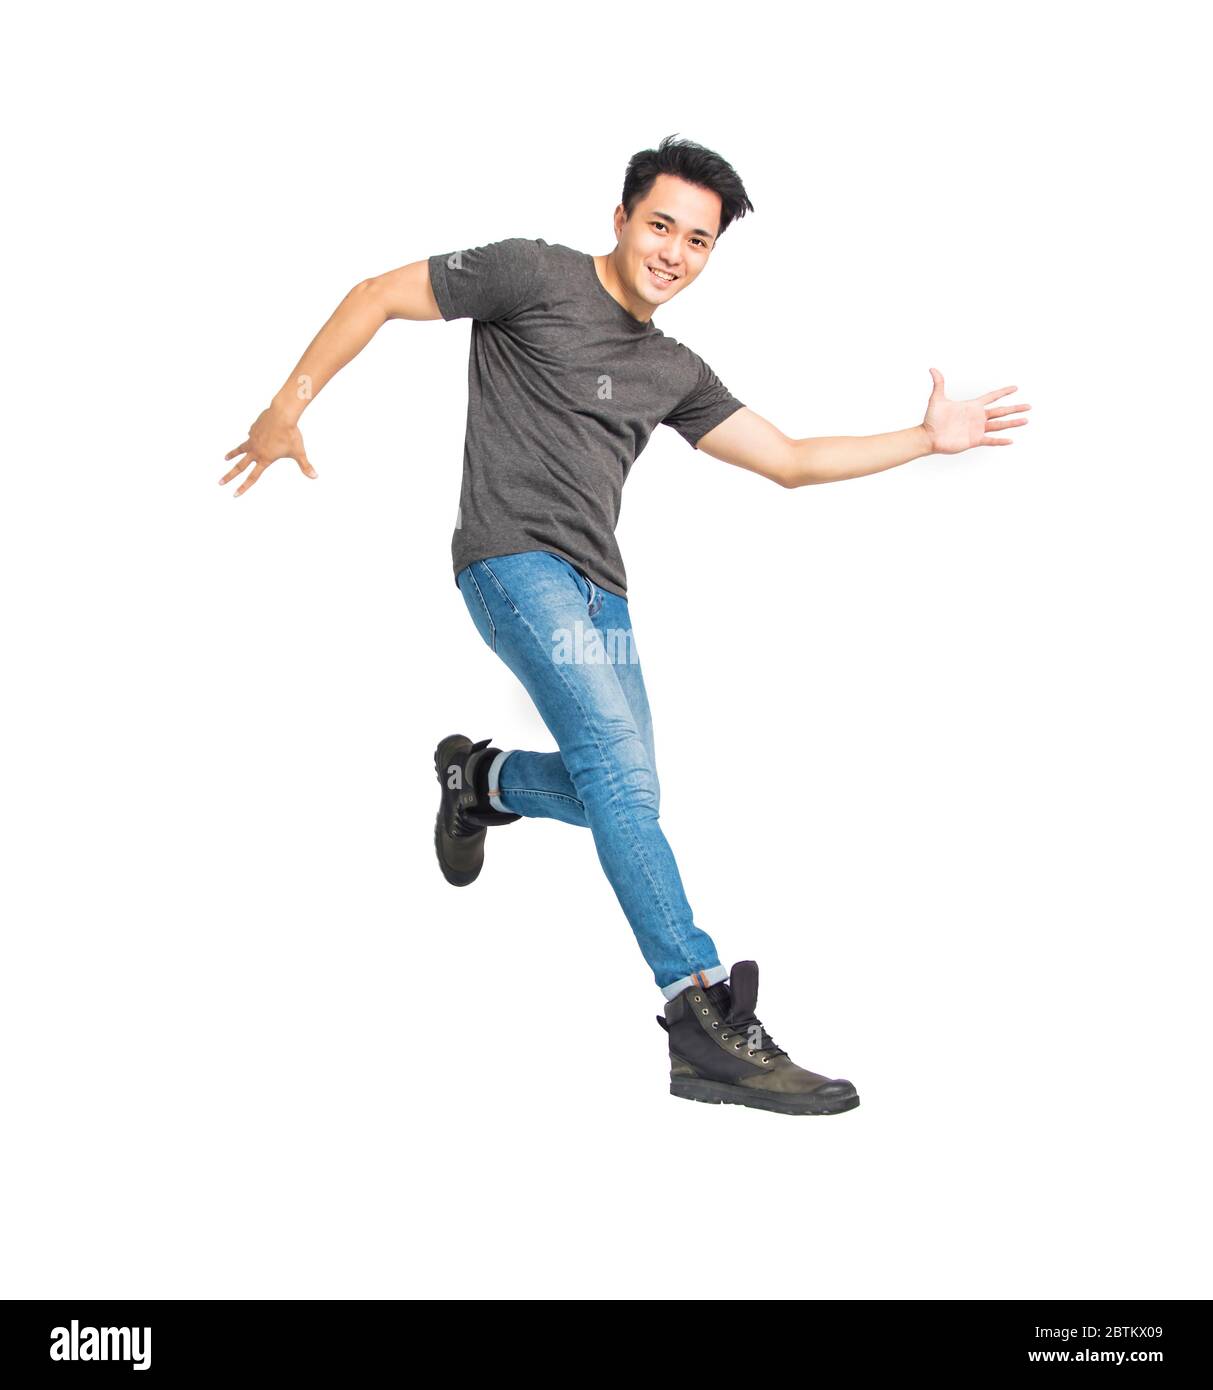 Glücklich junge asiatische Mann tanzen und springen isoliert auf weiß Stockfoto